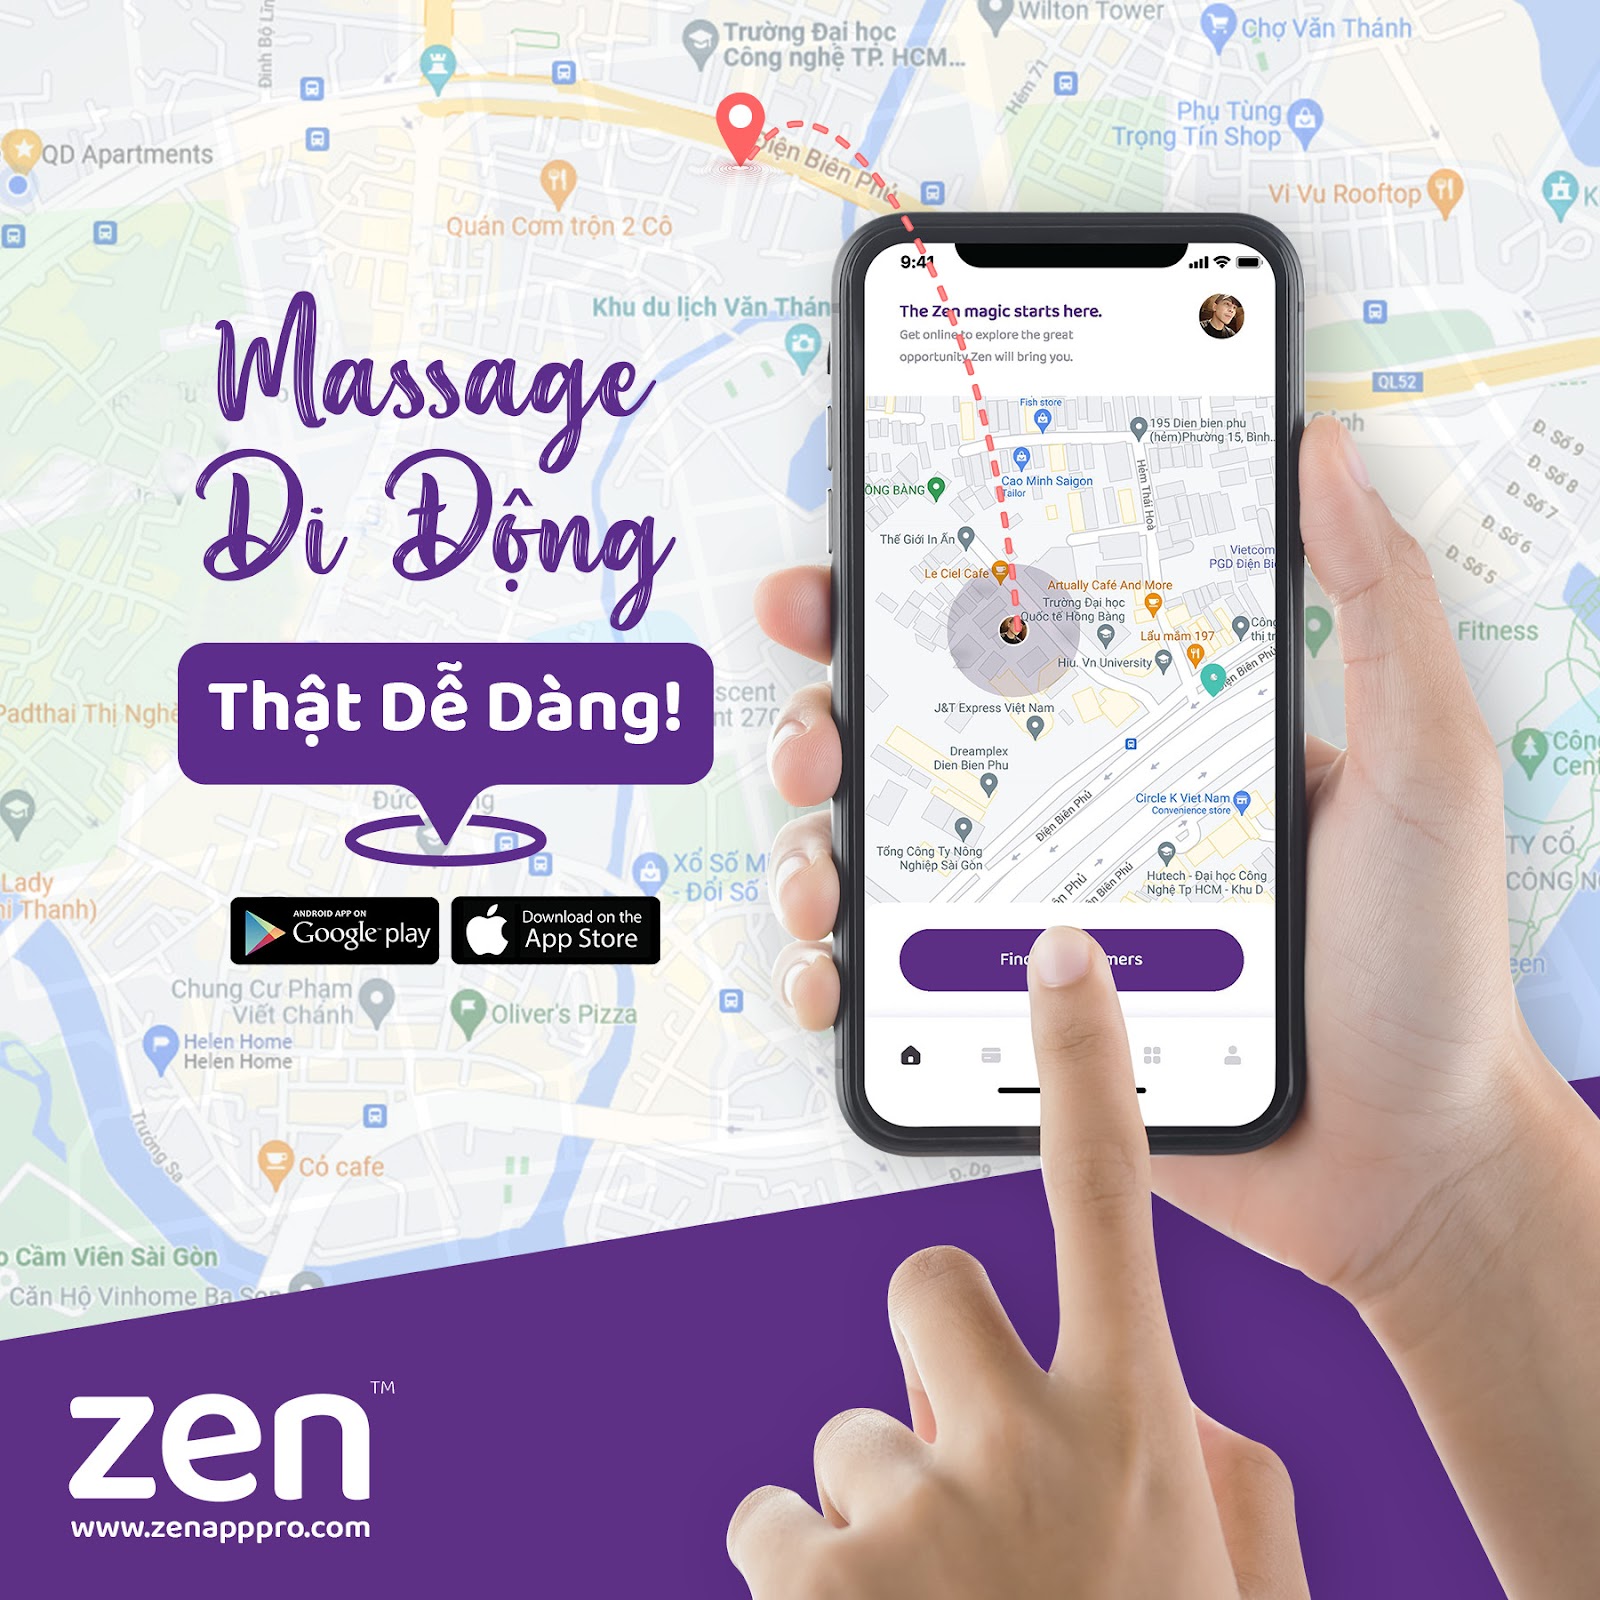 Zen cung cấp các dịch vụ massage chuyên nghiệp - an toàn - thuận tiện